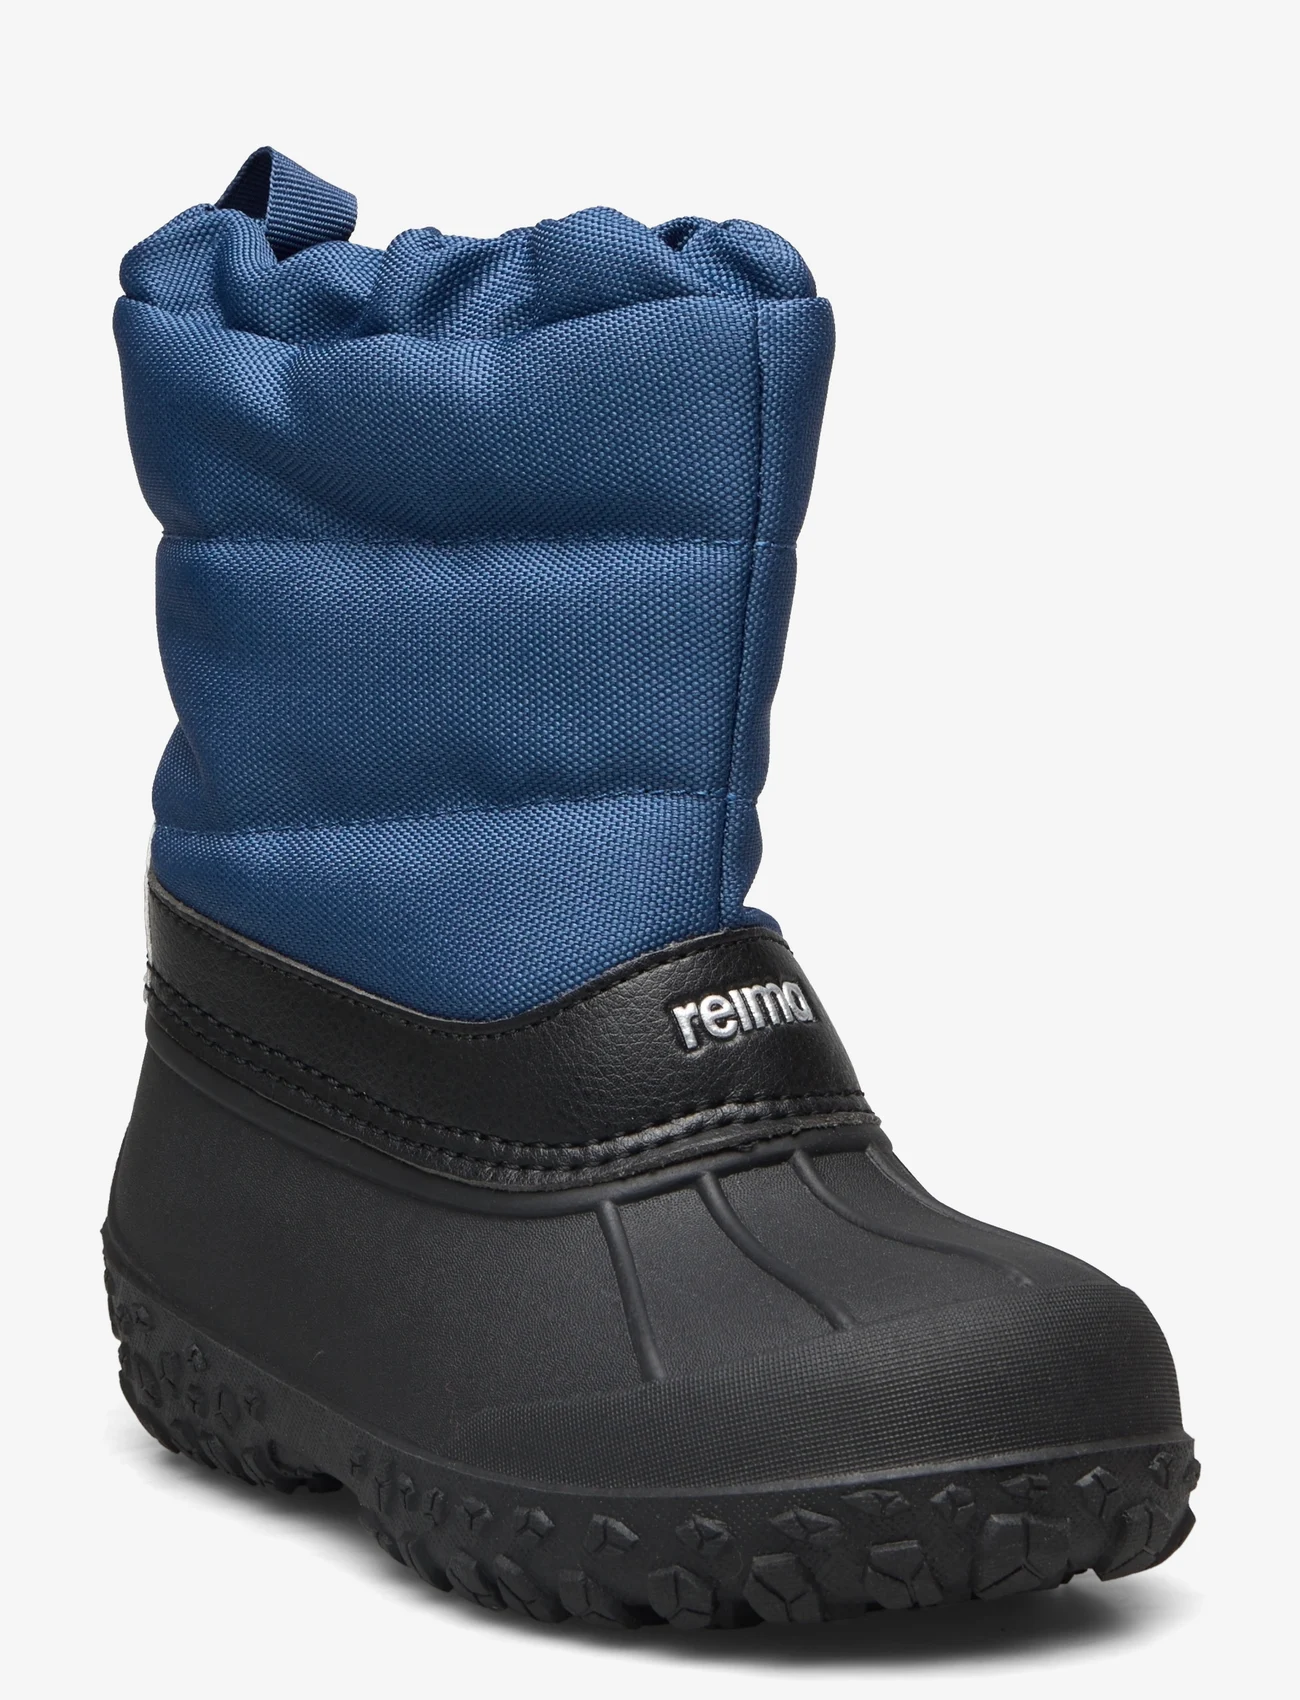 Reima - Winter boots, Loskari - kids - blue - 0